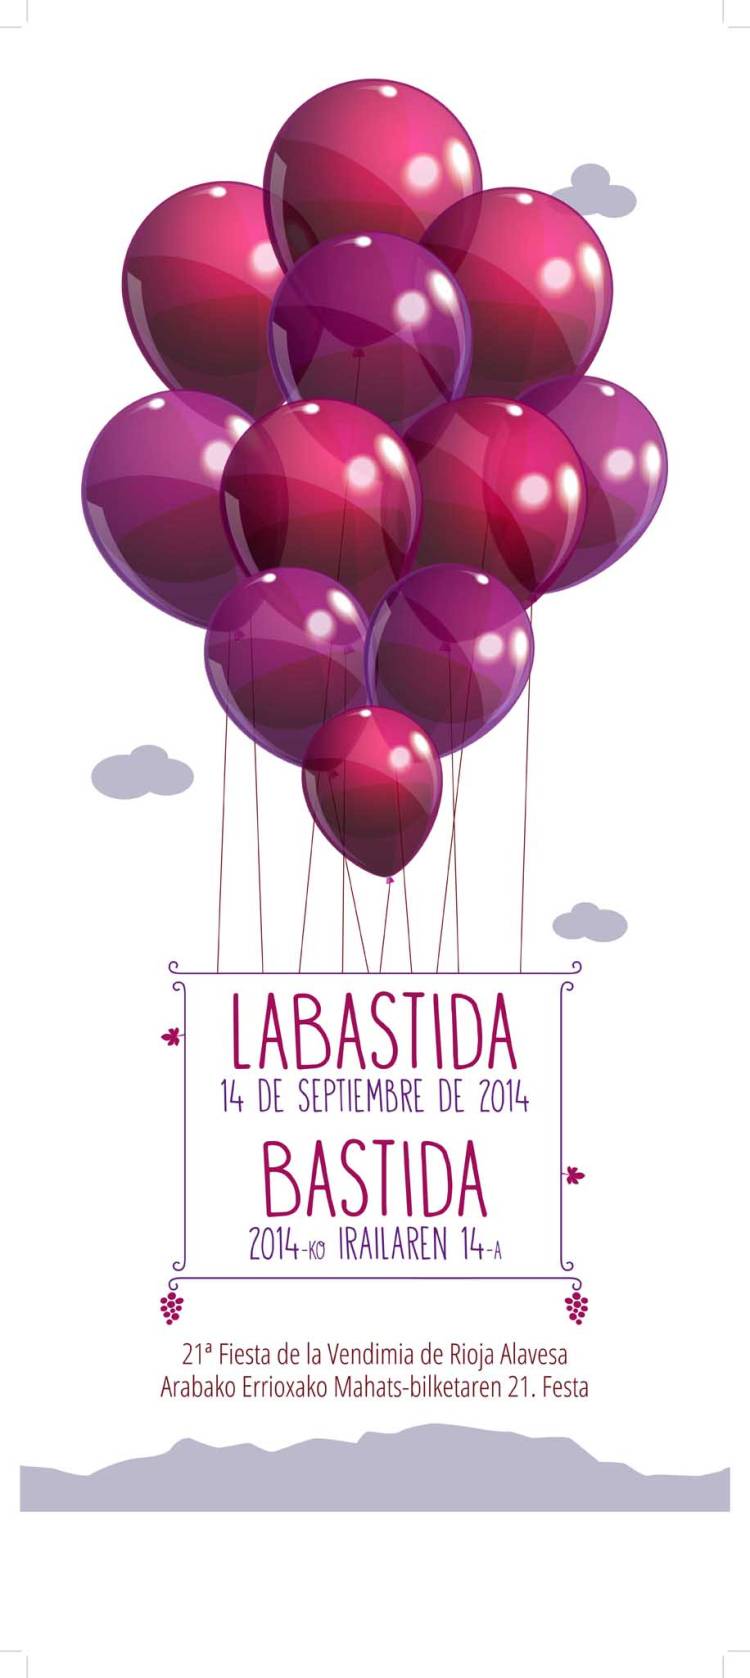 Ya tenemos cartel de la Fiesta de la Vendimia de Rioja Alavesa